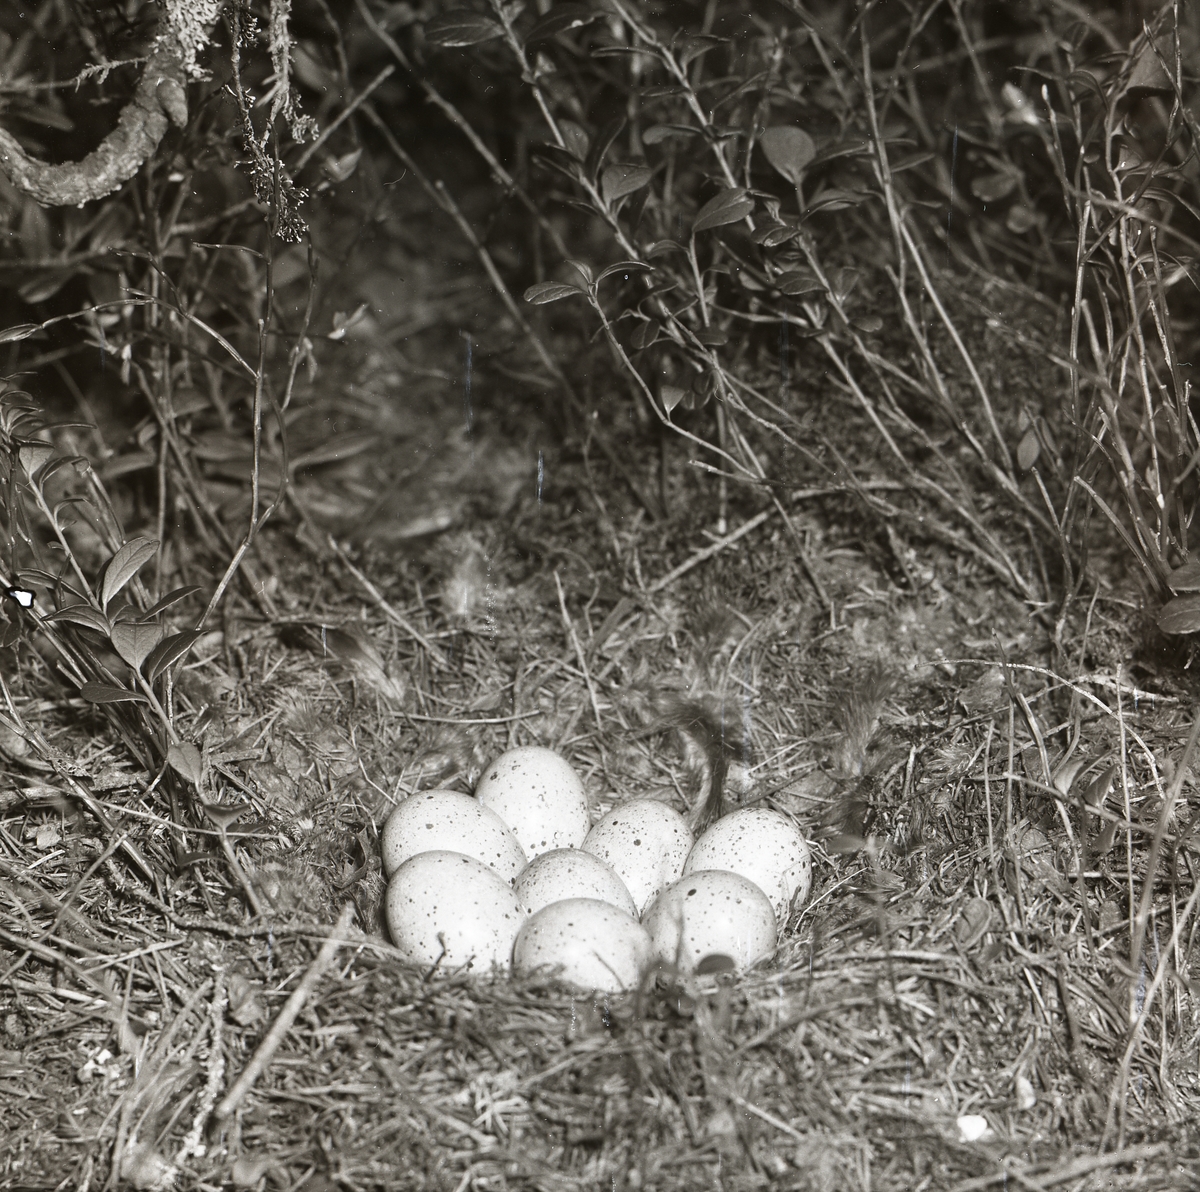 I Trönö juni 1955 gömmer sig ett fågelbo av kvistar och gräs i bärriset. Åtta fågelägg ligger omhuldade av fågeldun i boet. Orräggen är ljusa med små mörka prickar utspridda över ytan.